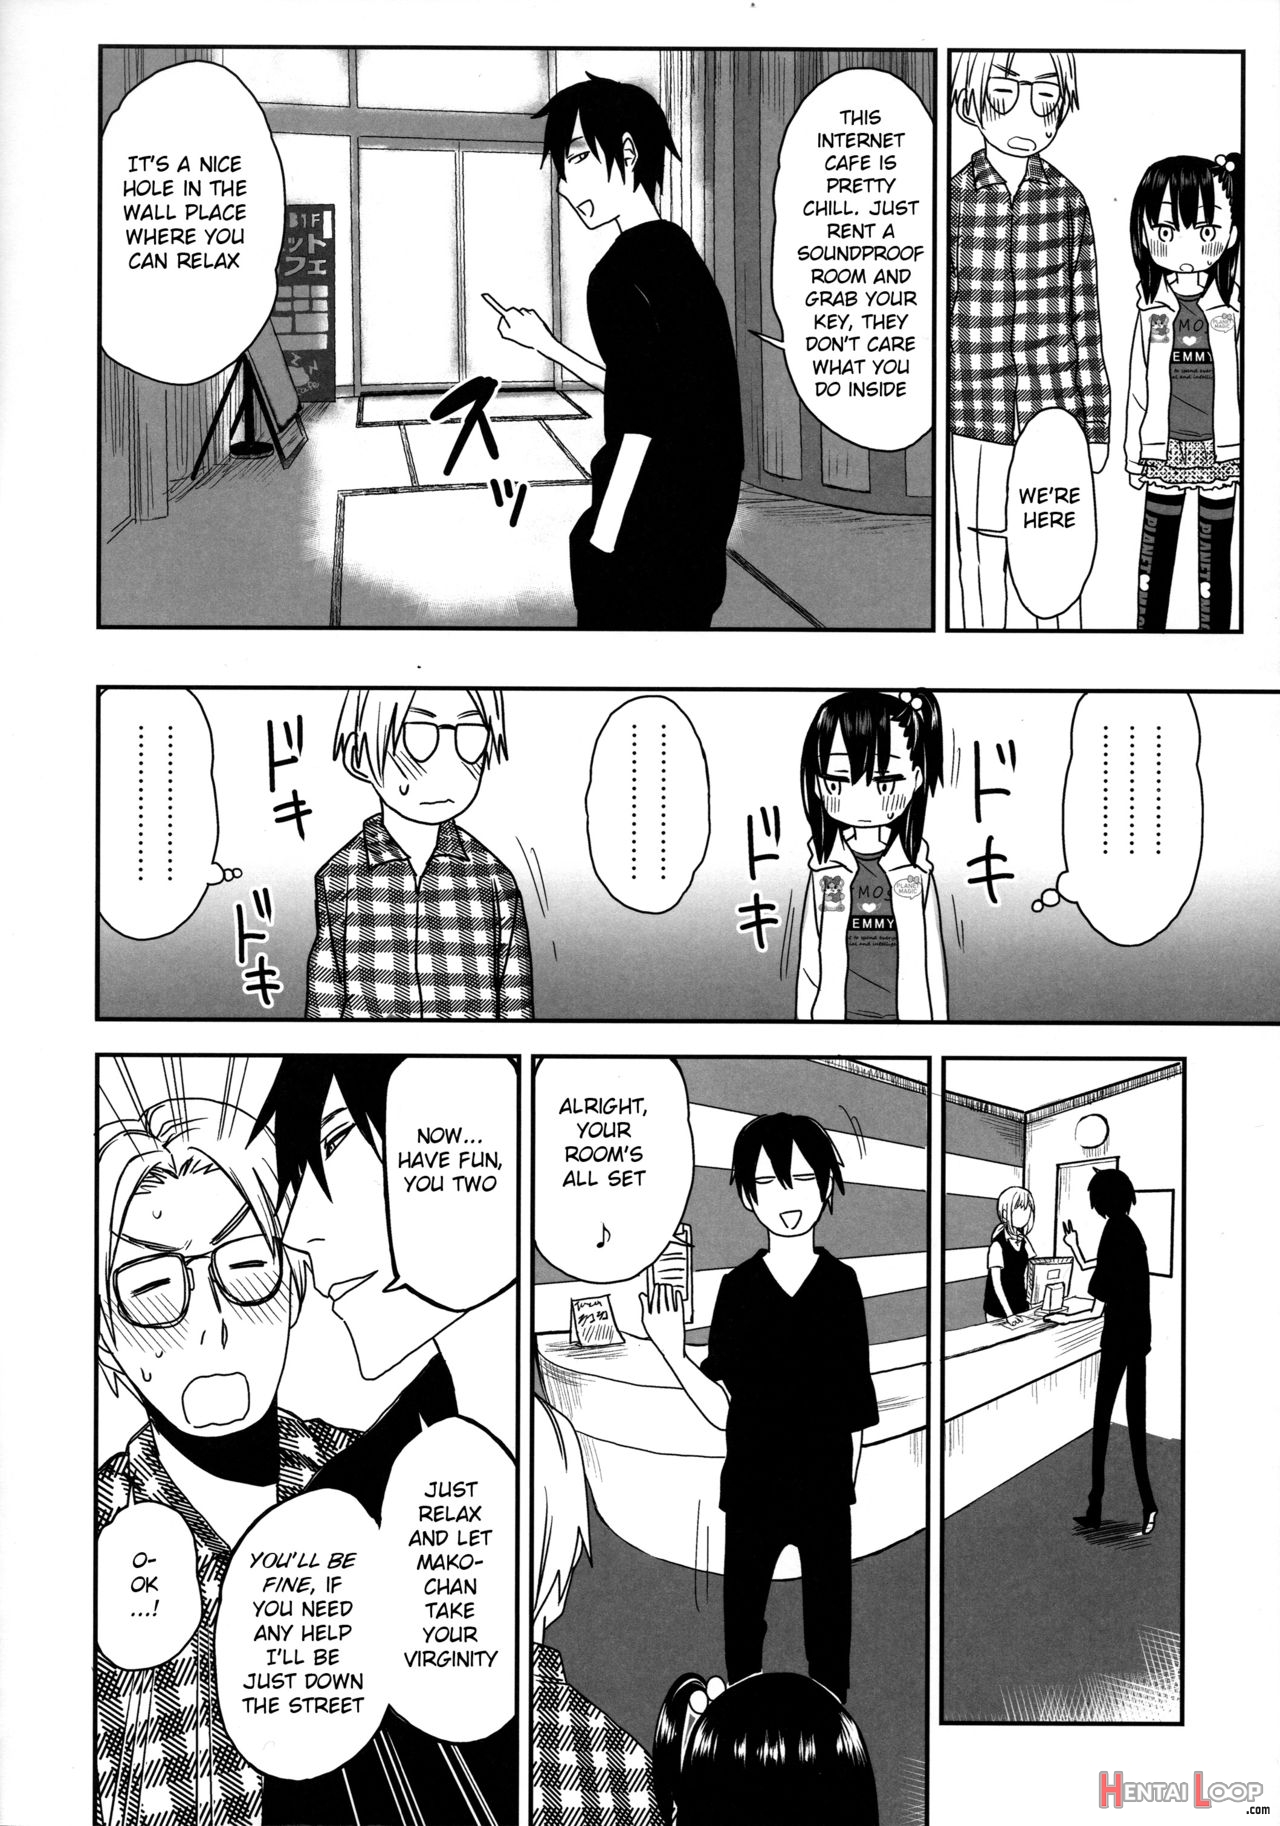 Tonari No Mako-chan Season 2 Vol. 2 page 14